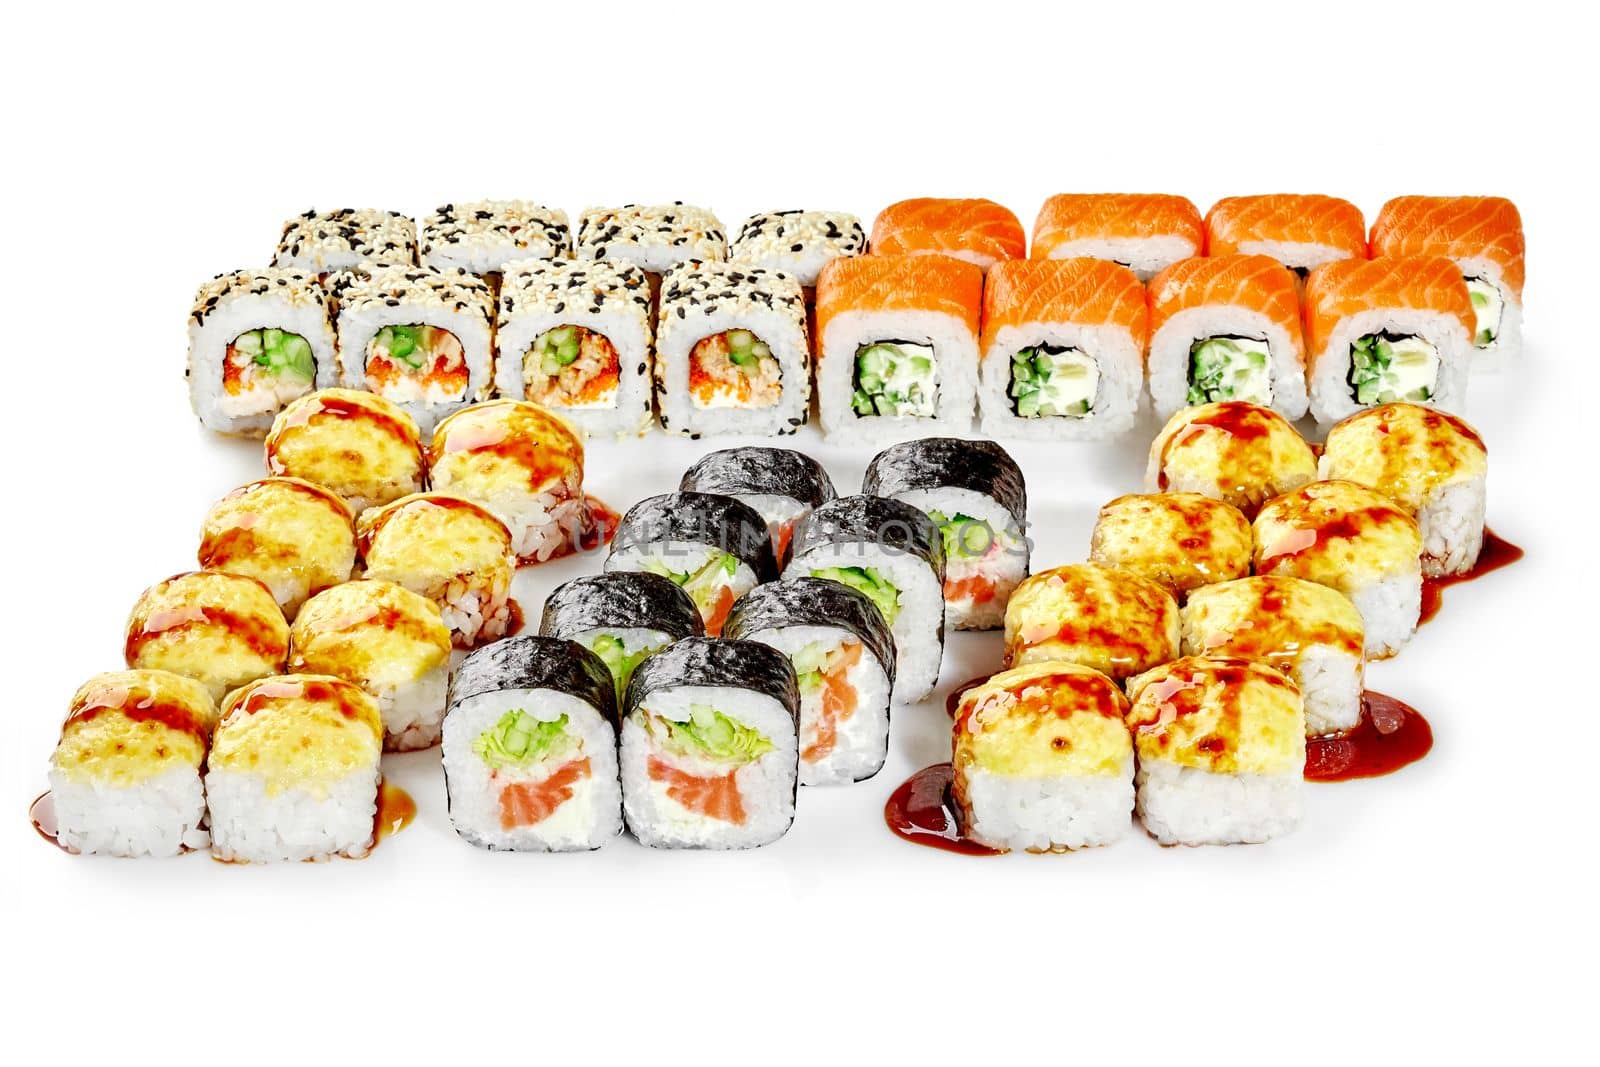 Set of various Japanese sushi rolls for family dinner by nazarovsergey